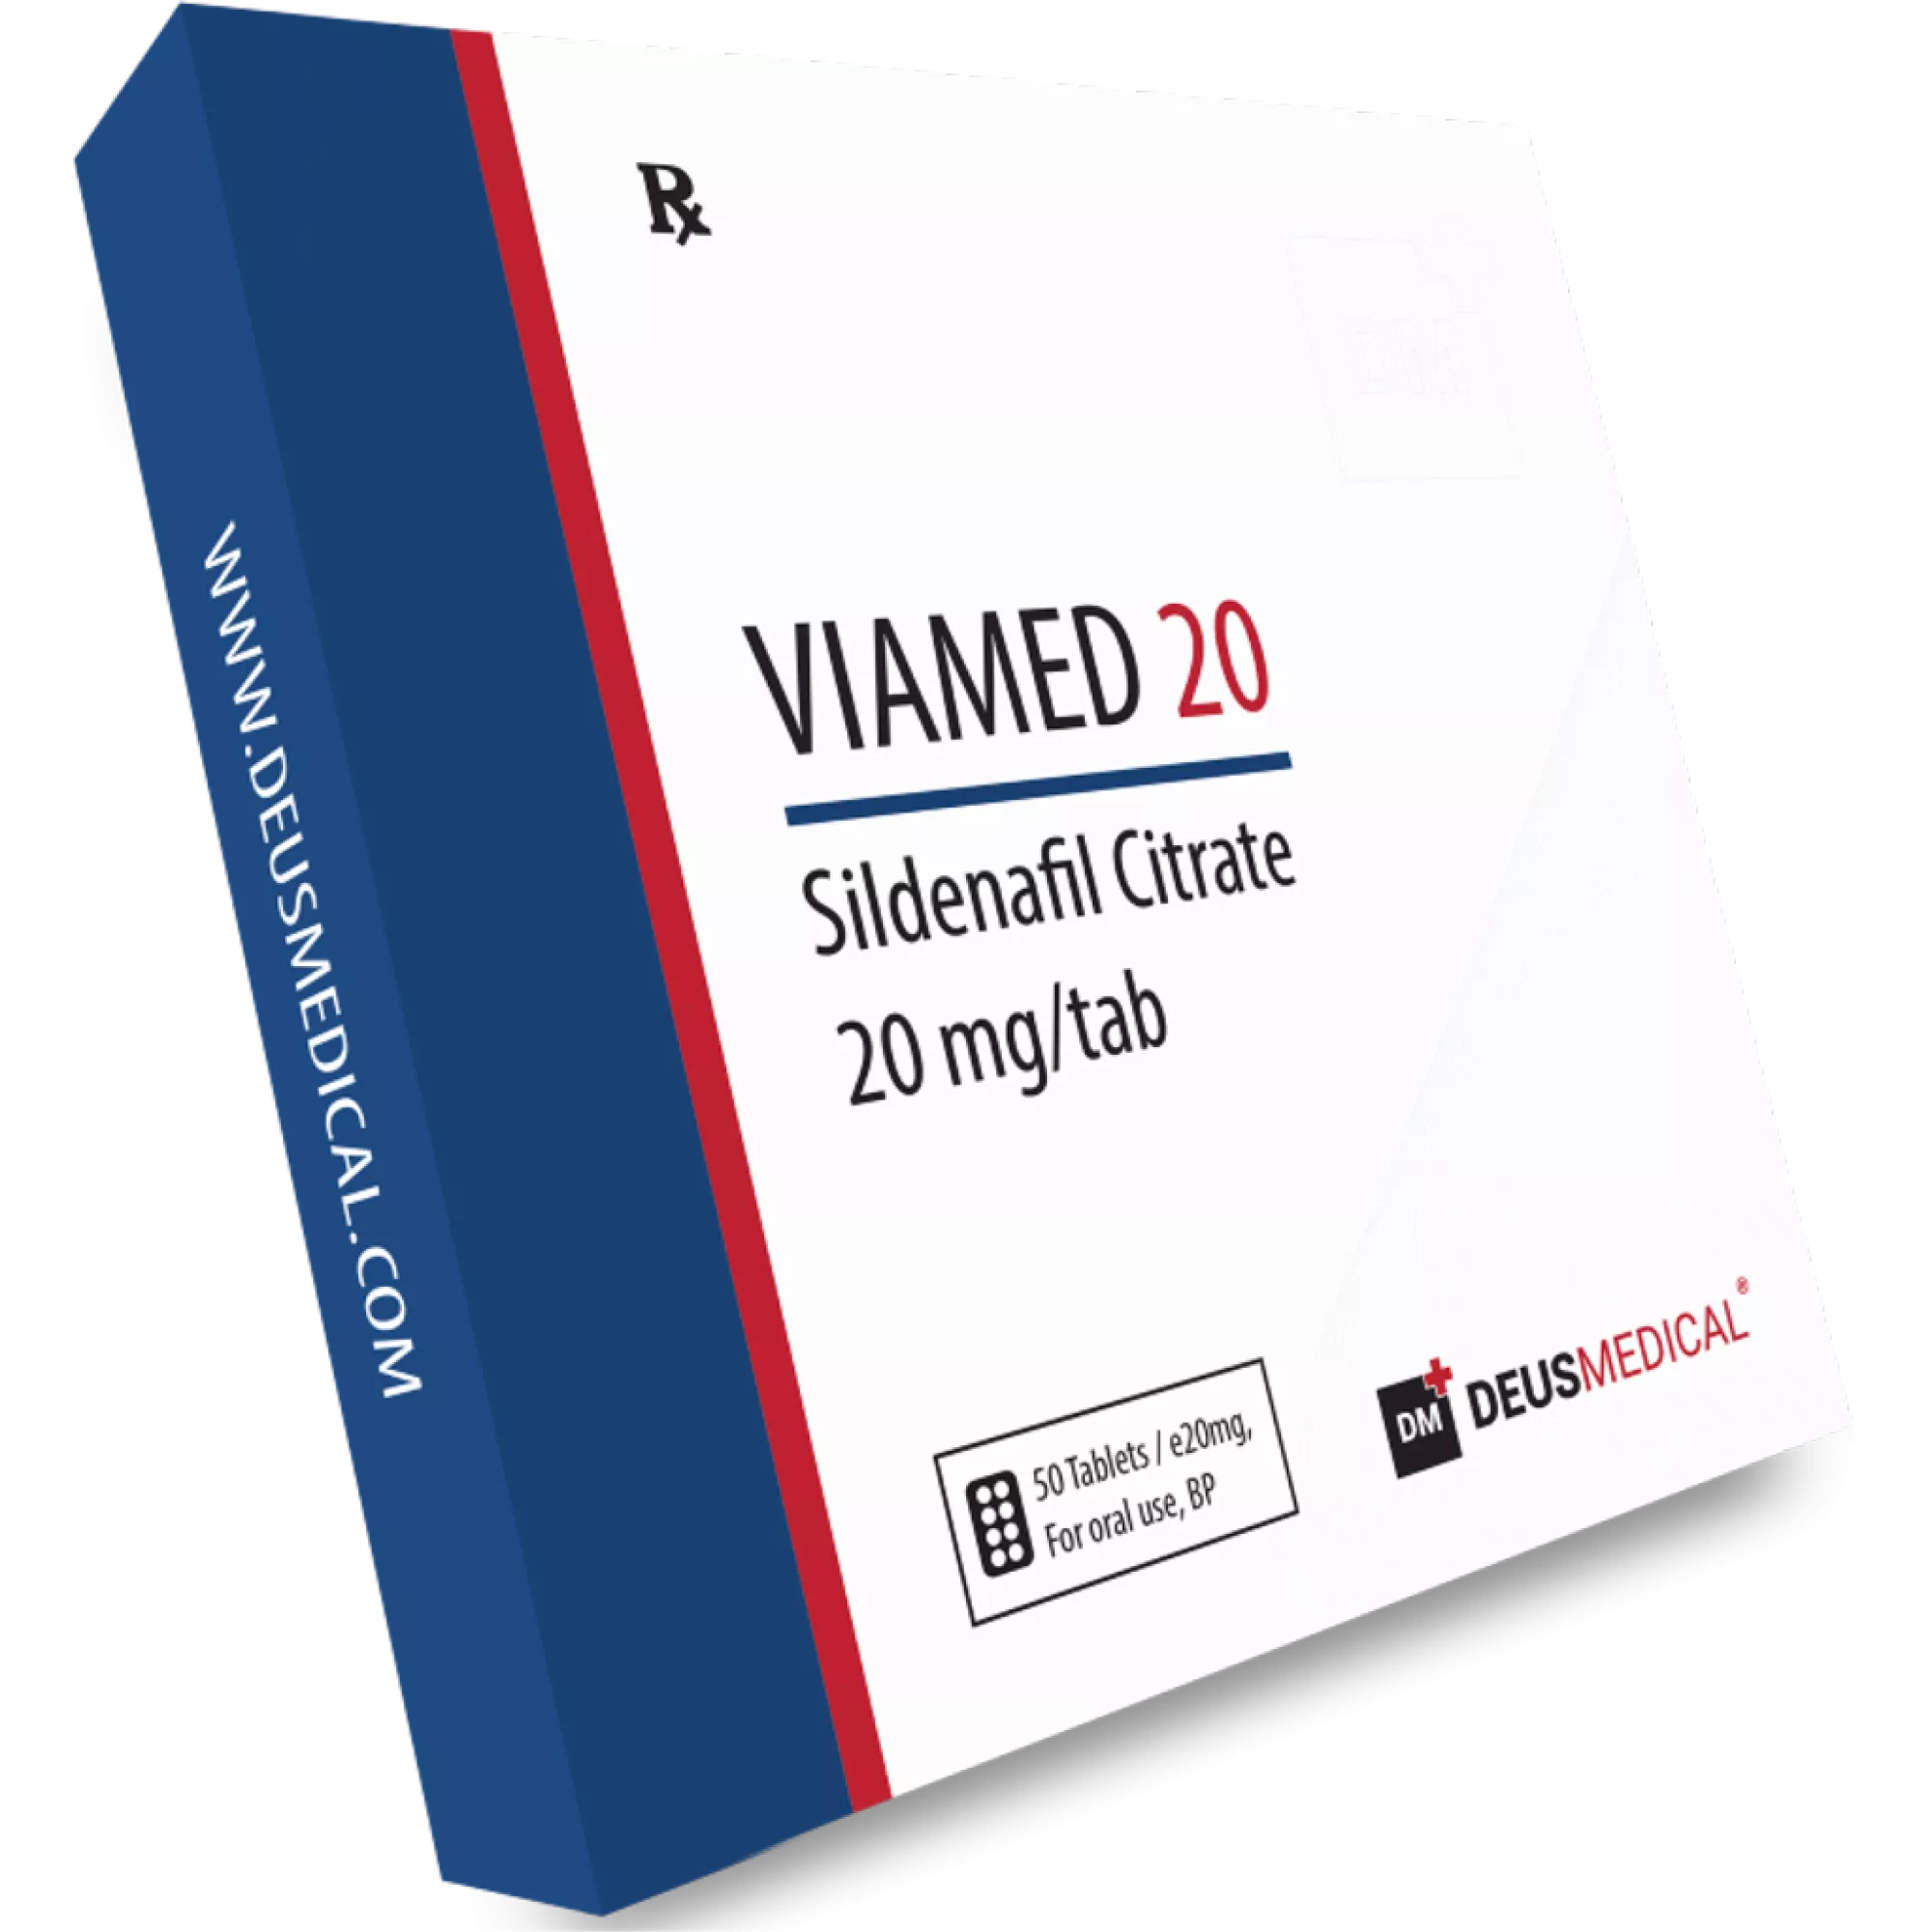 VIAMED 20 (Sildenfail Citrate) - Viagra, Deus Medical, Köp steroider online - www.deuspower.shop